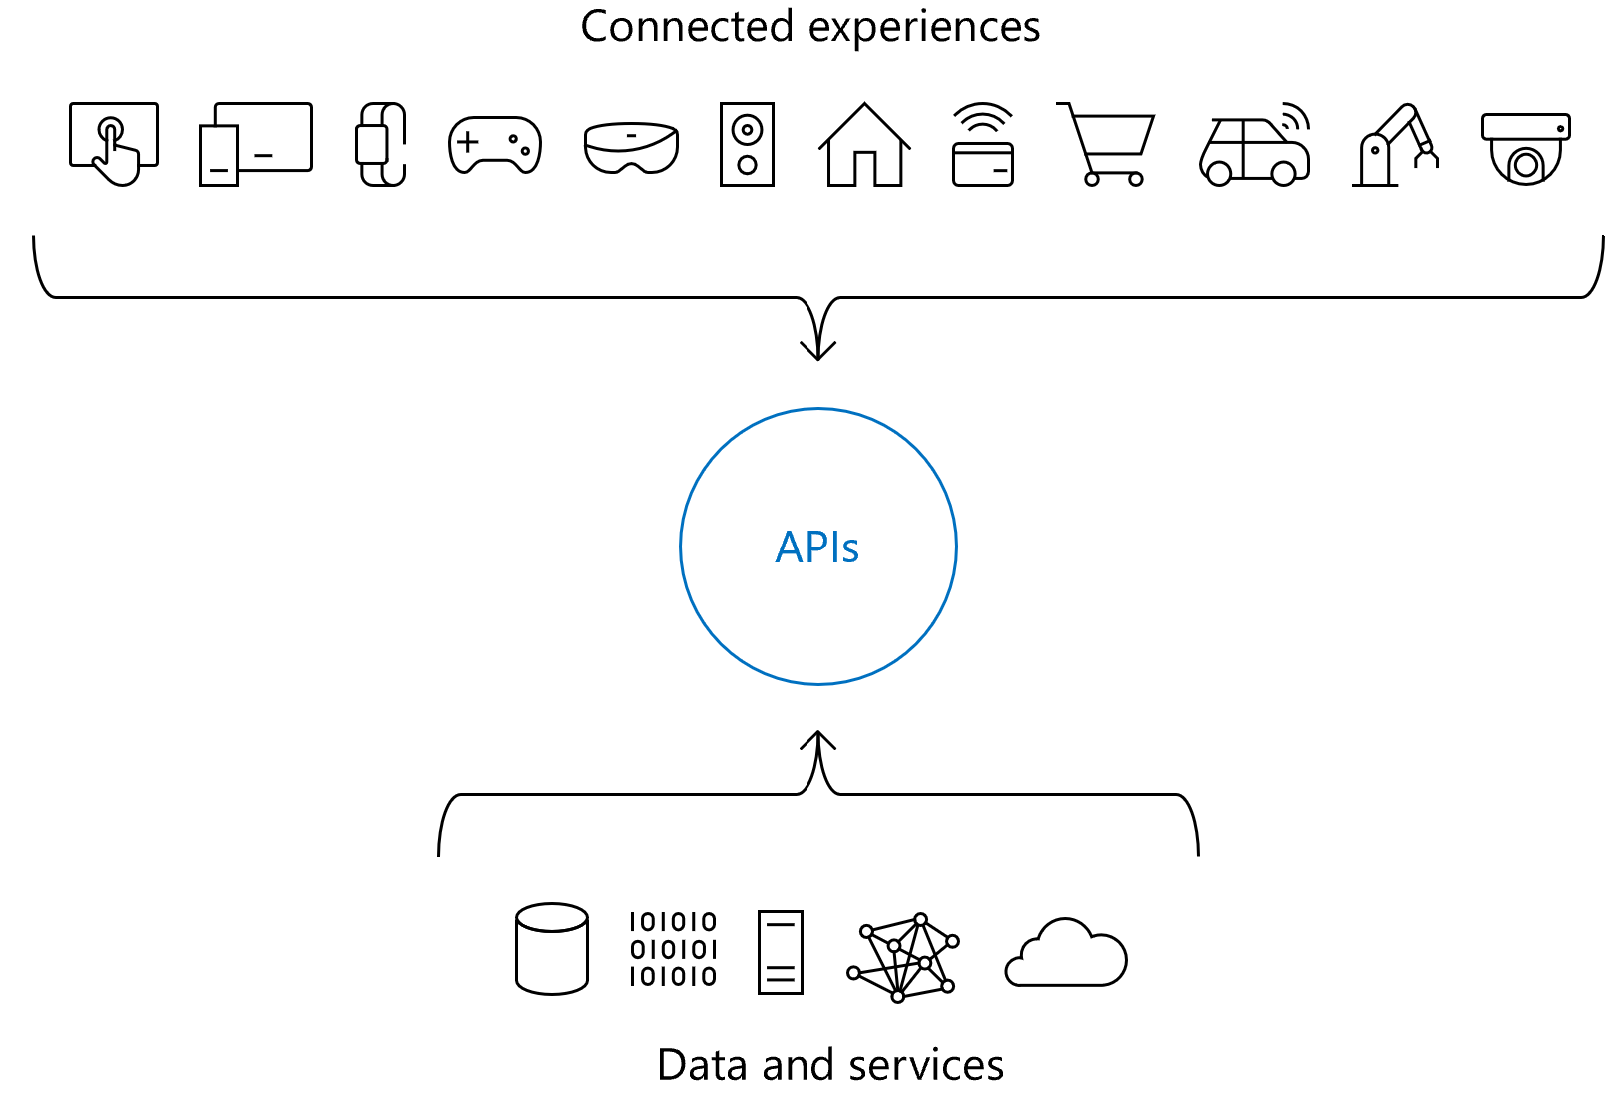 Diagrama mostrando o papel das APIs em experiências conectadas.